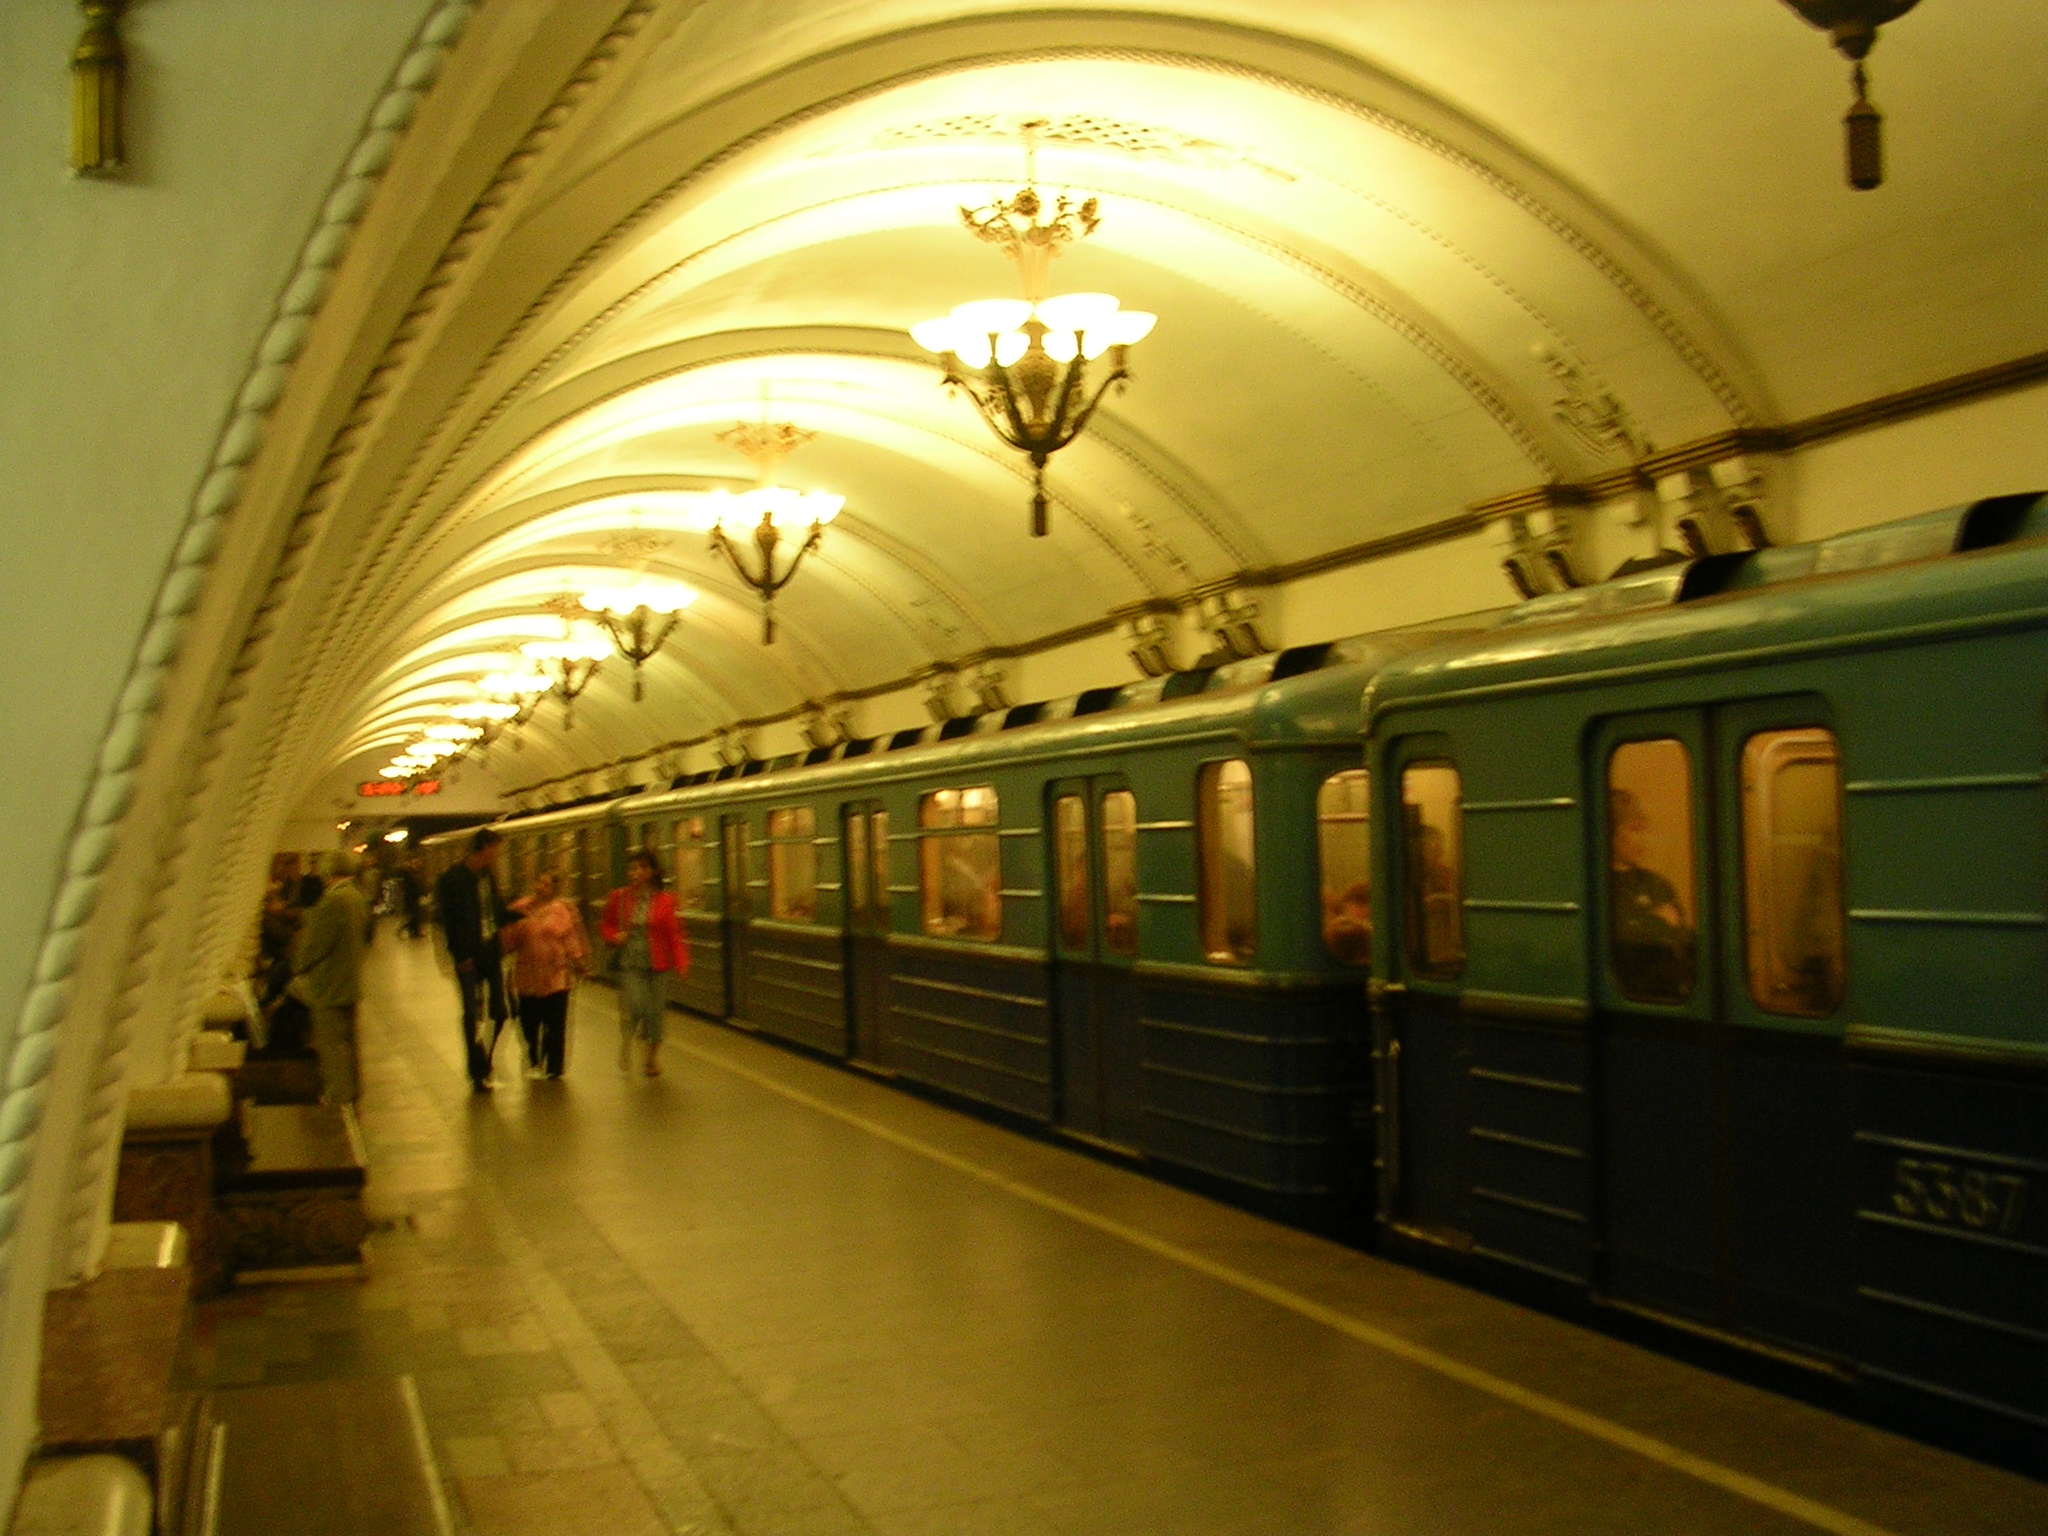 Moskvas anrika tunnelbana.